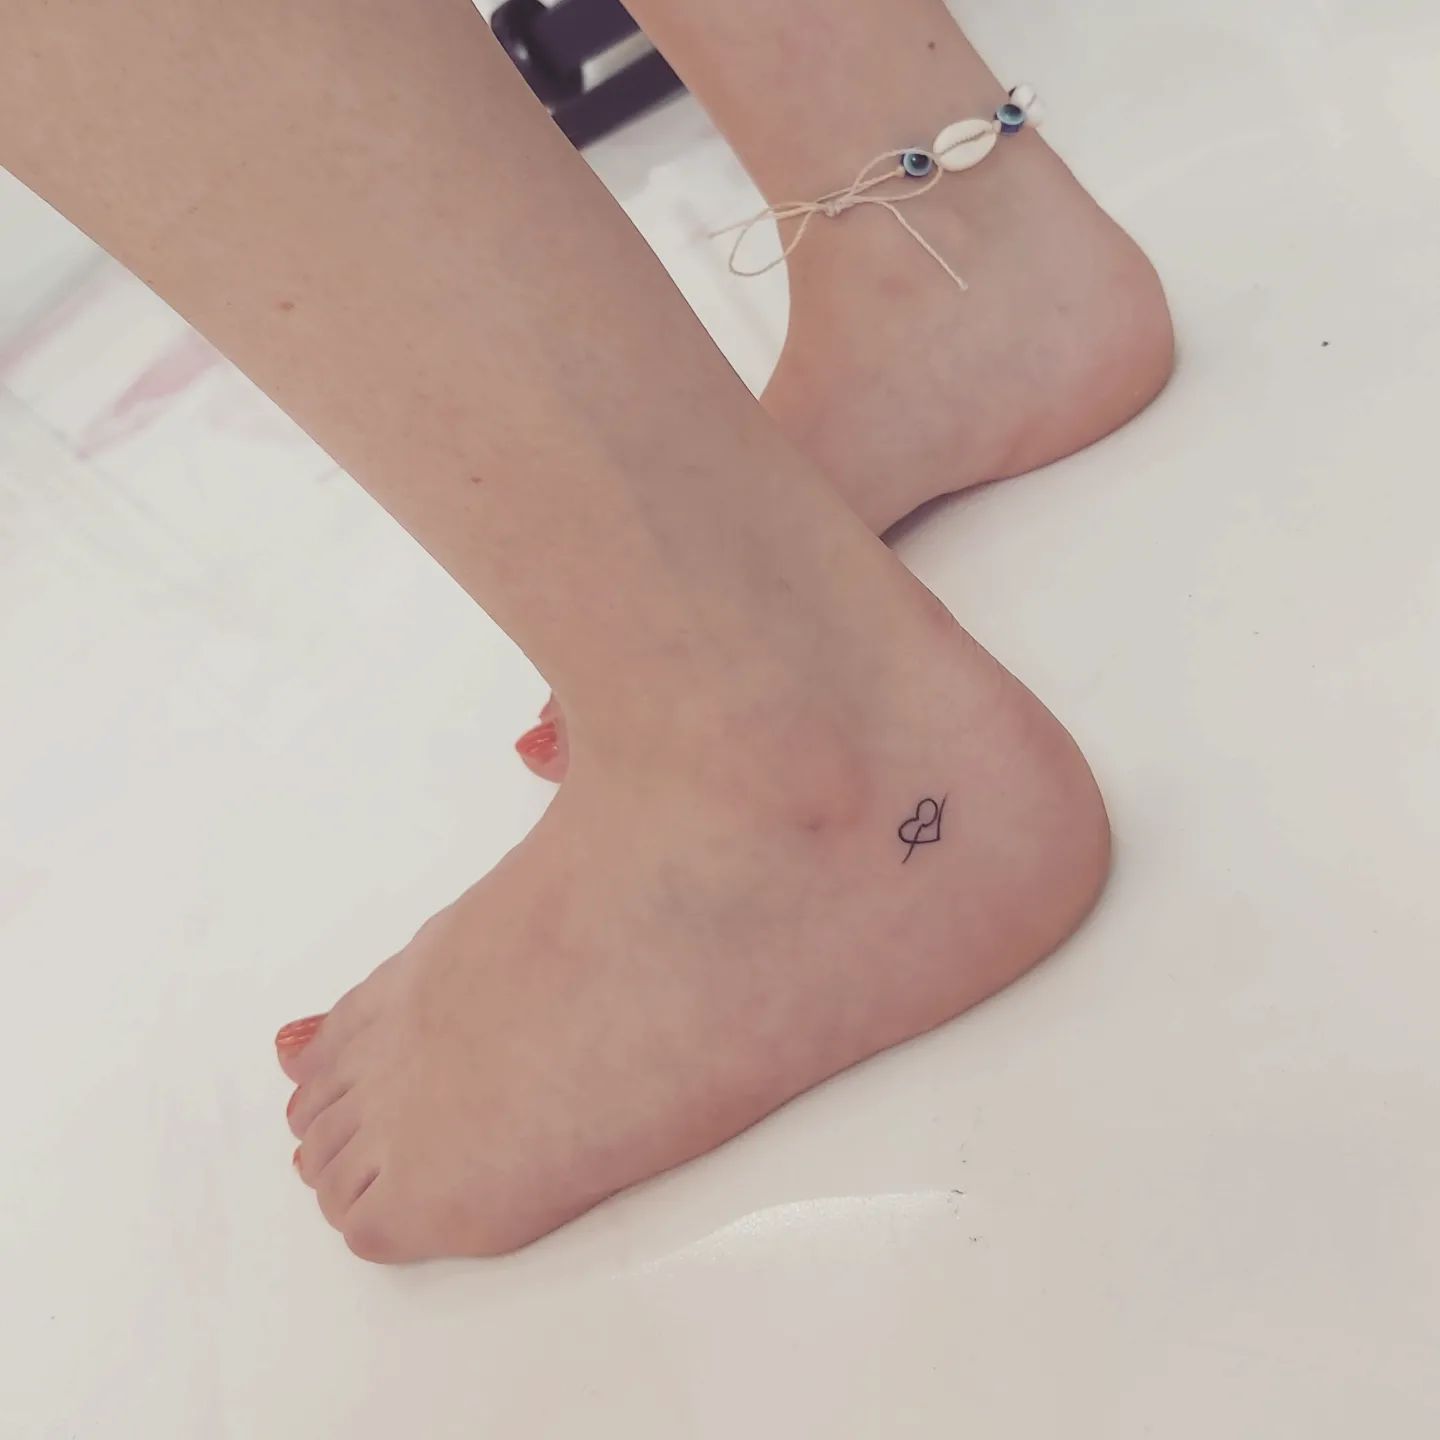 tatuagem no pé 22